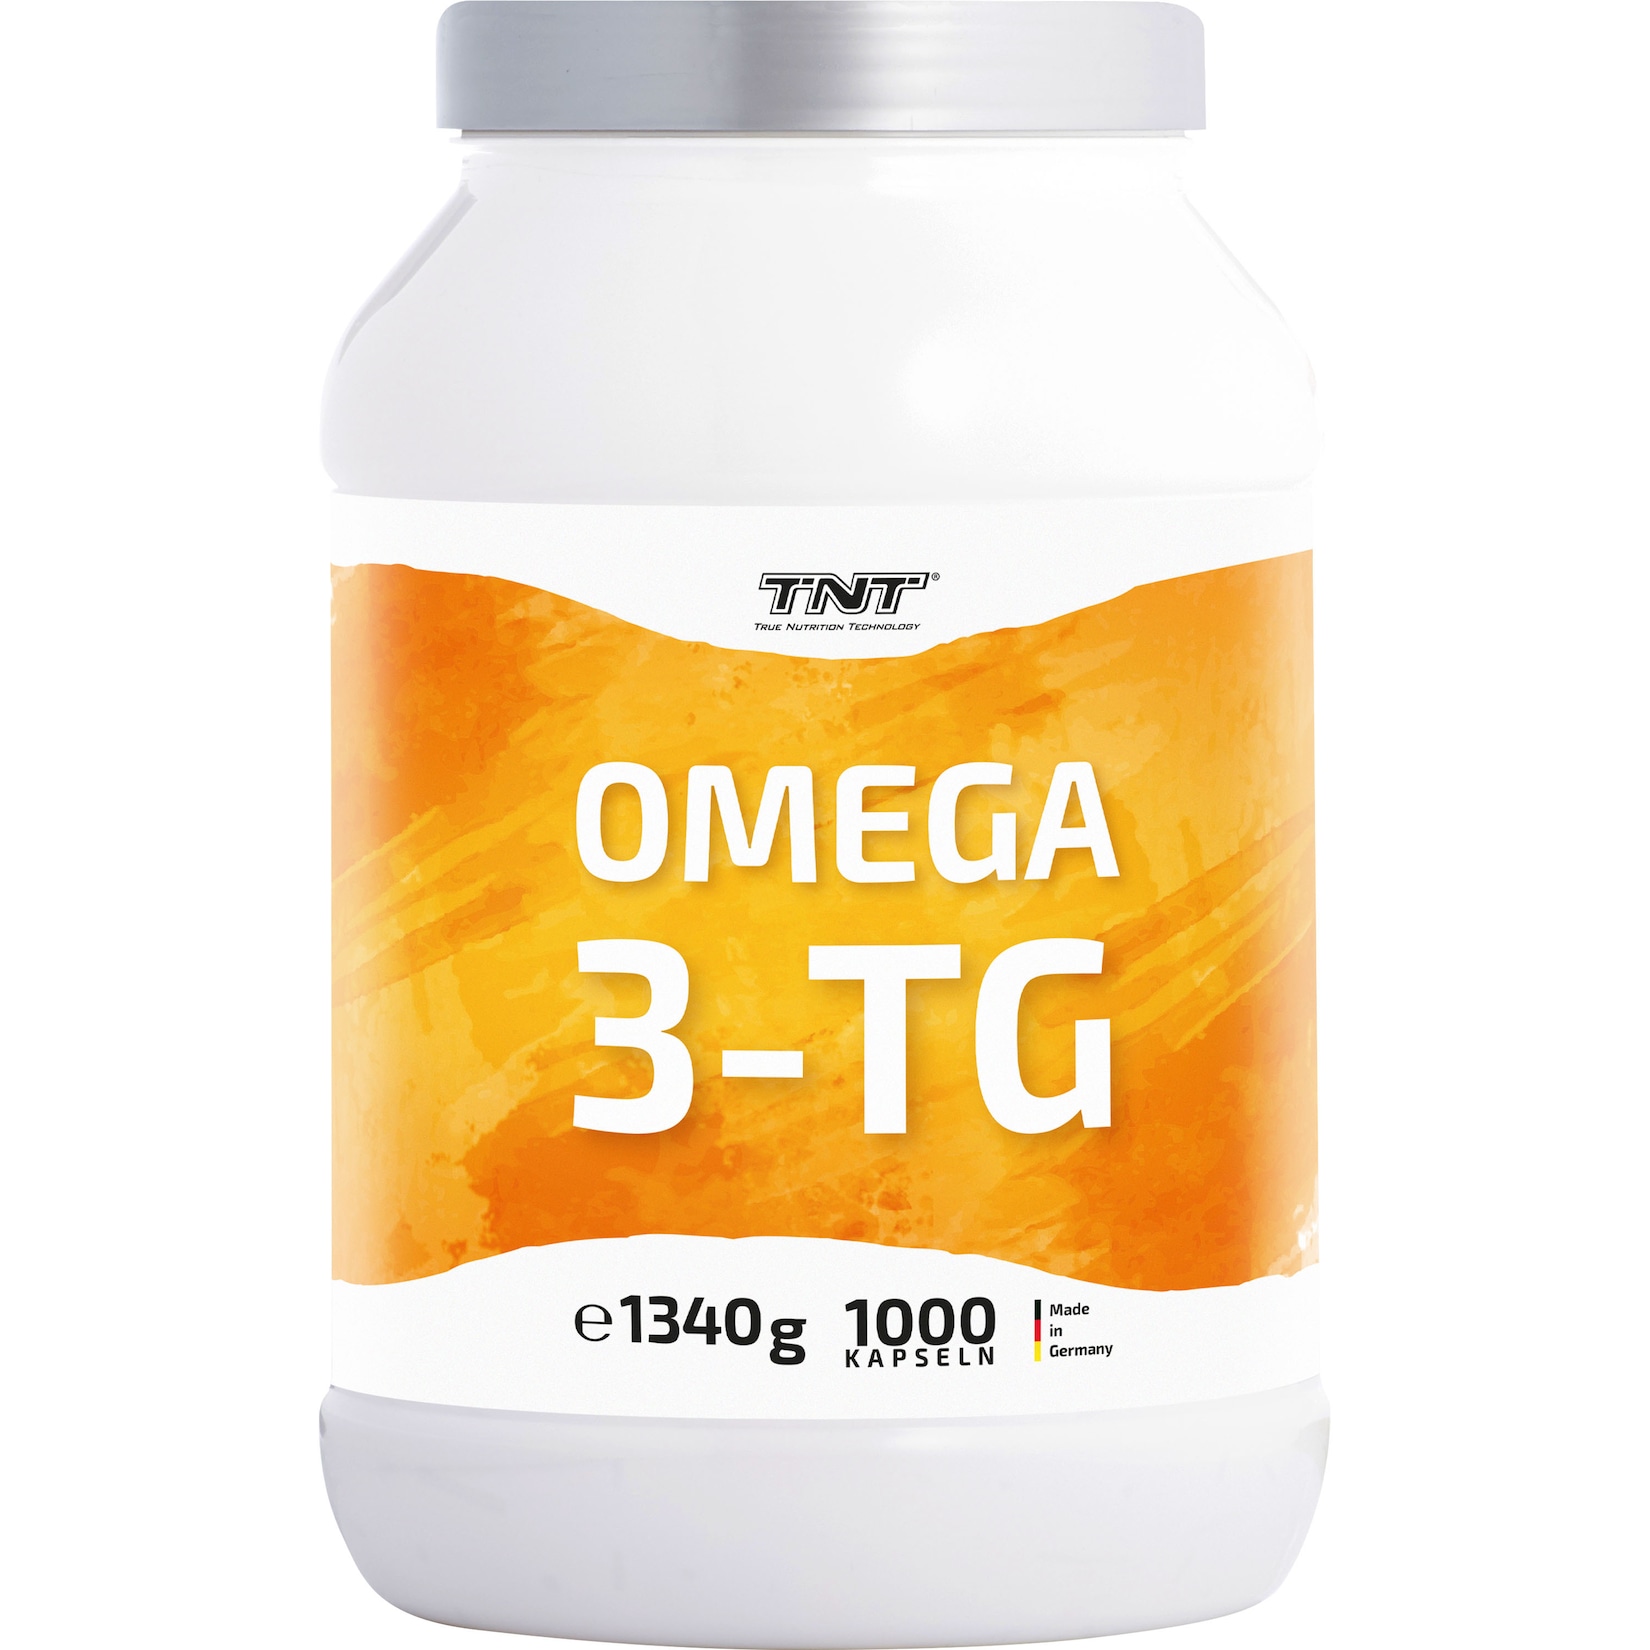 TNT Omega 3-TG Fischöl in natürlicher Triglycerid-Form. Wirkt entzündungshemmend